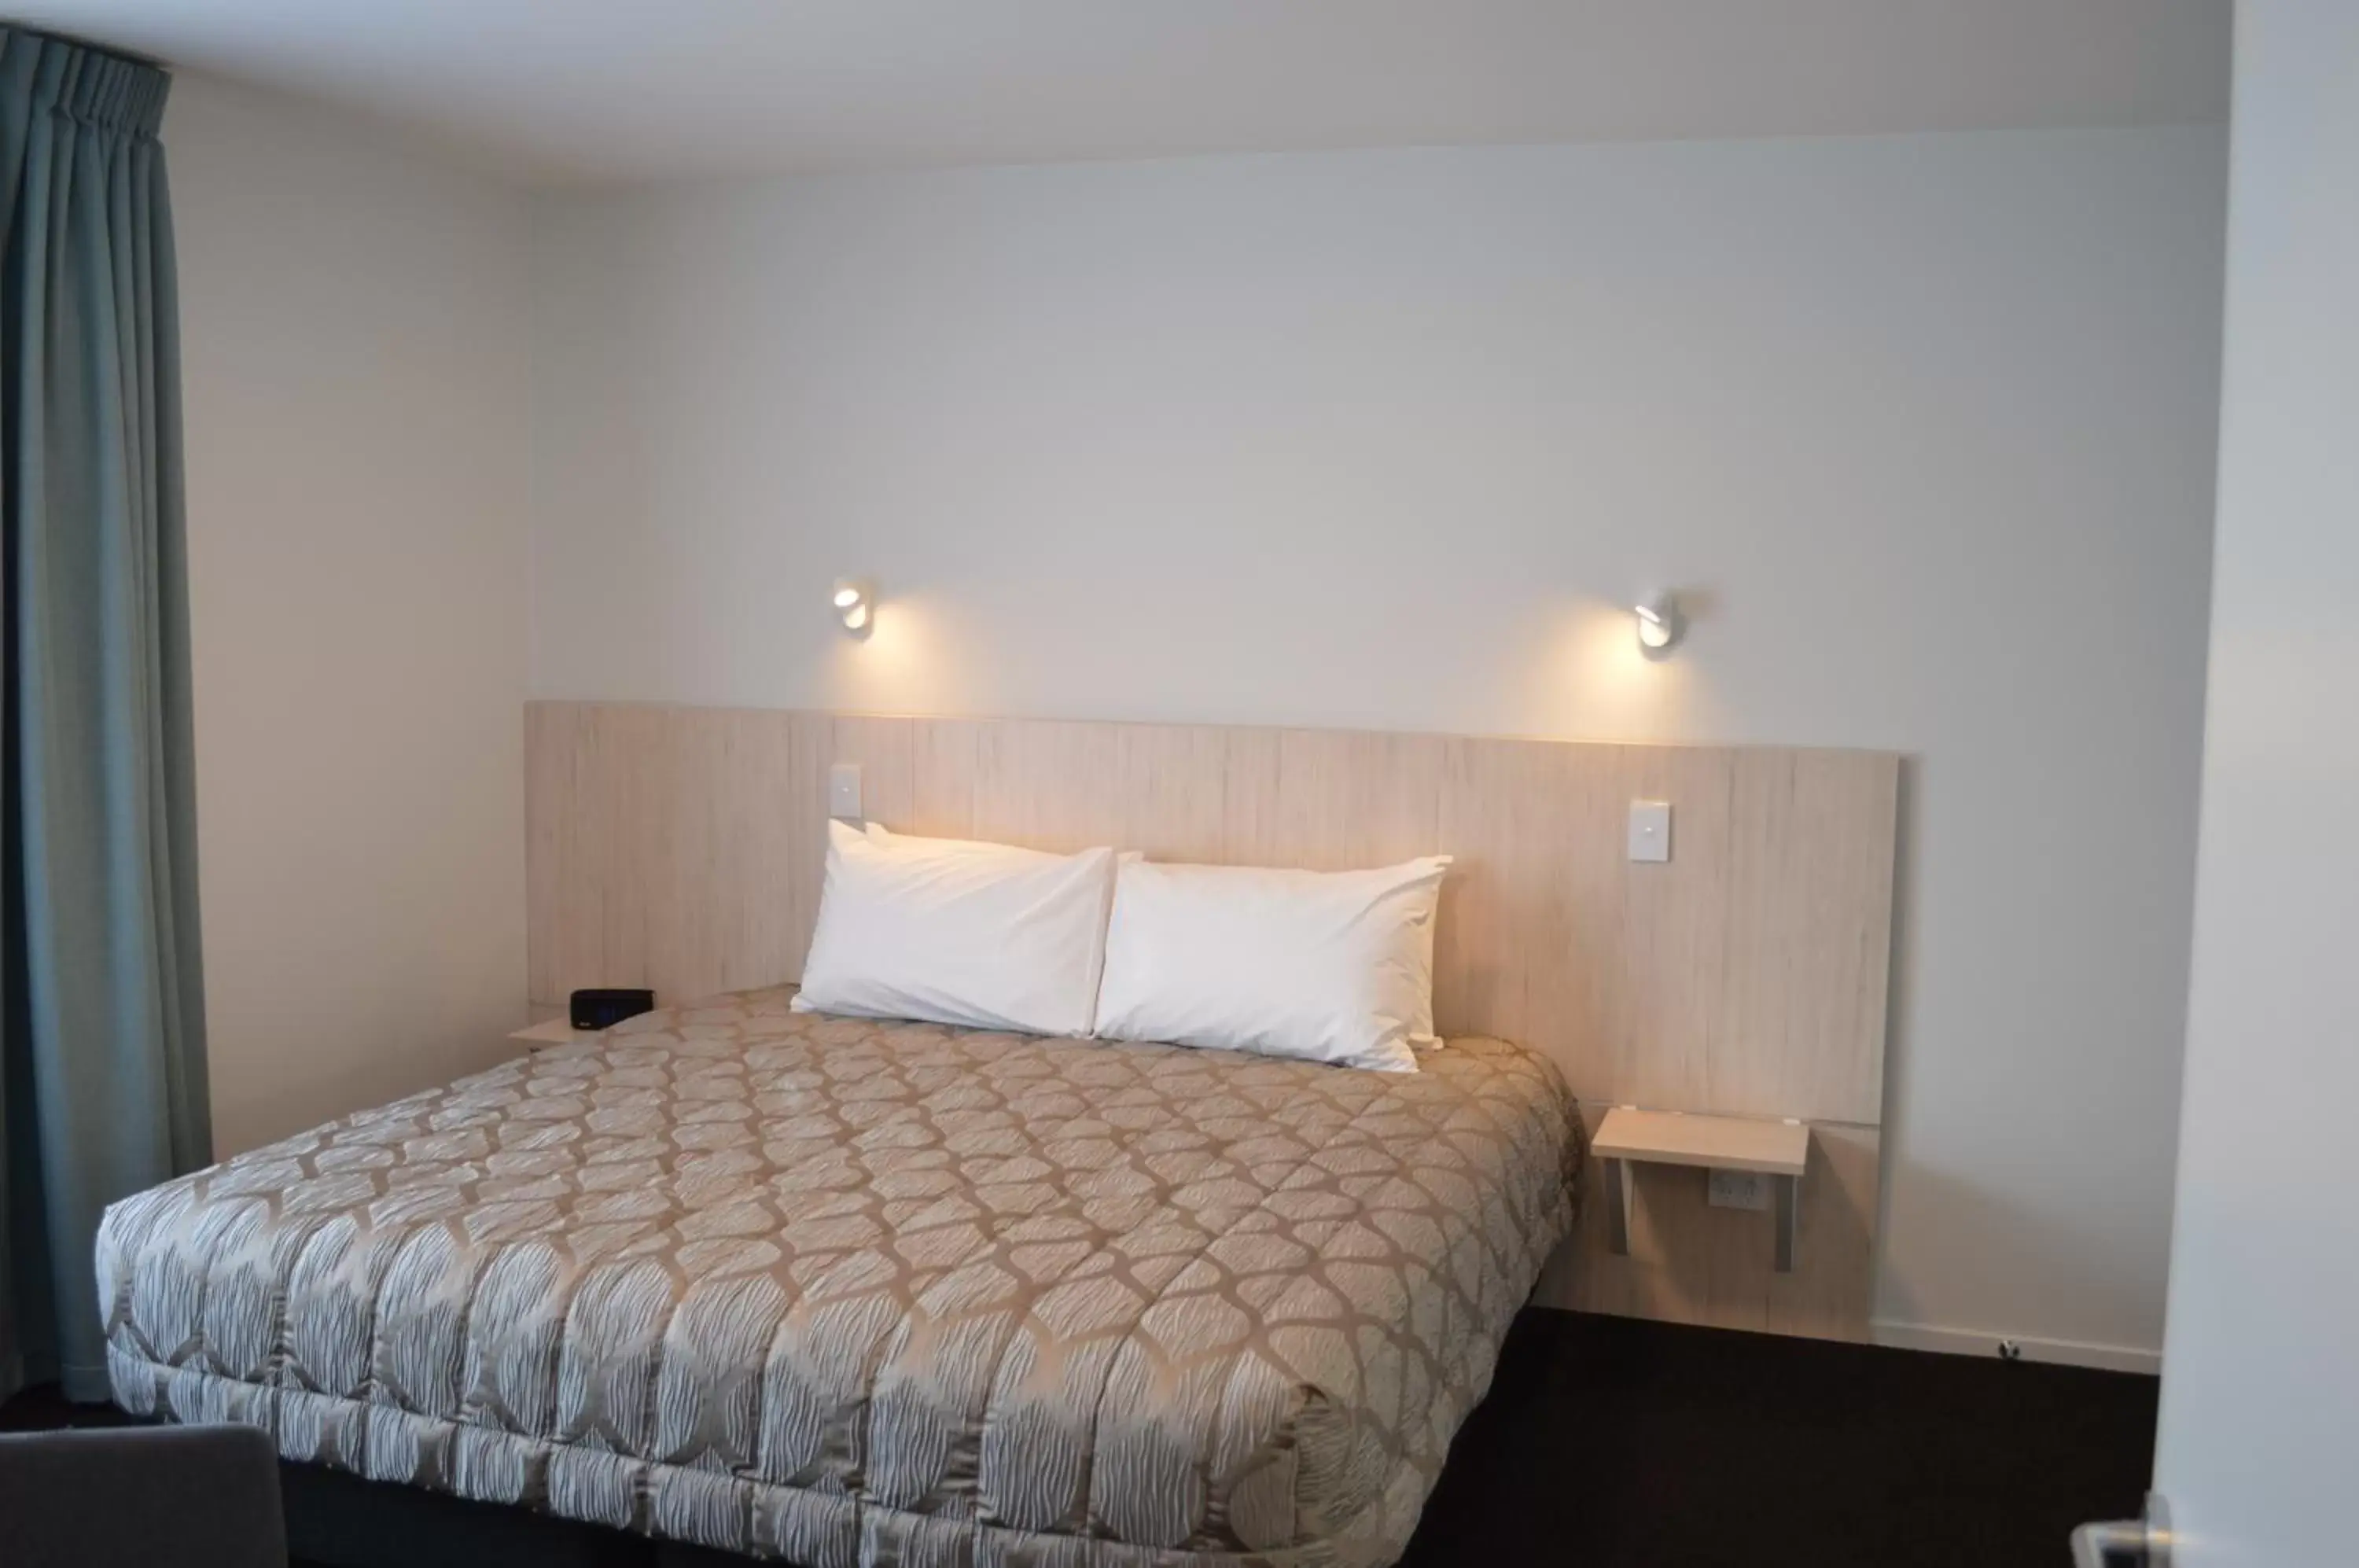 Bed, Room Photo in Beachfront Hotel Hokitika